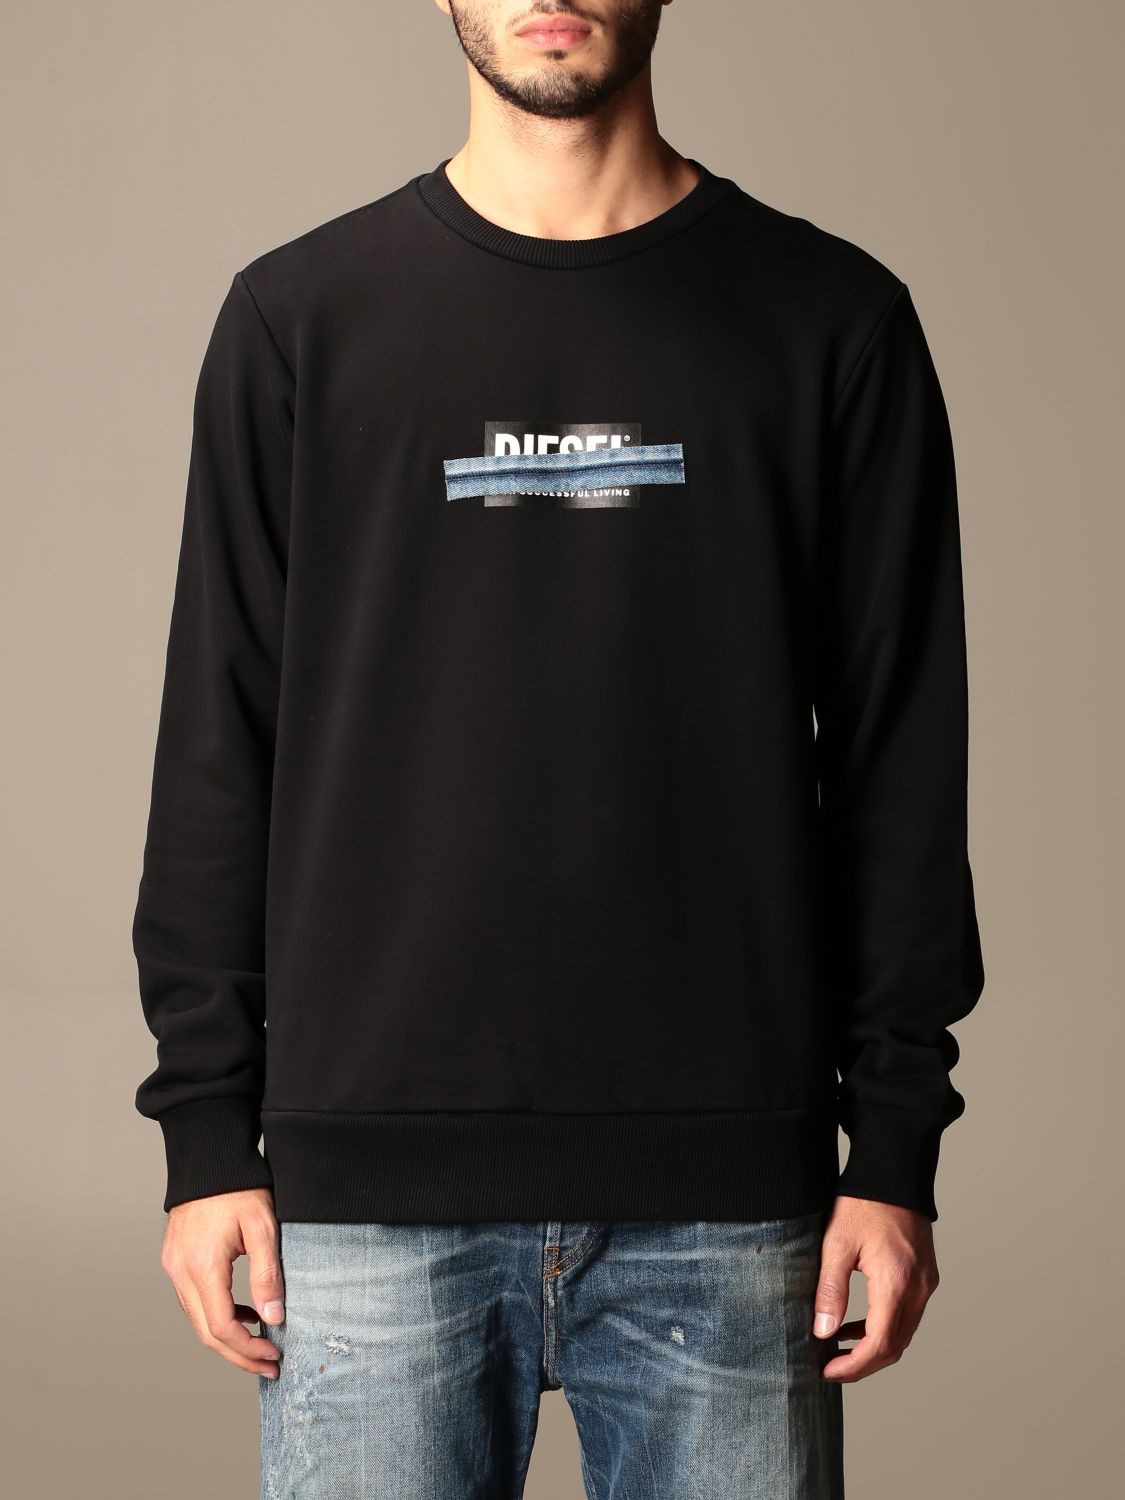 DIESEL: sweatshirt for men - Black | Diesel sweatshirt A01047 0KASL ...